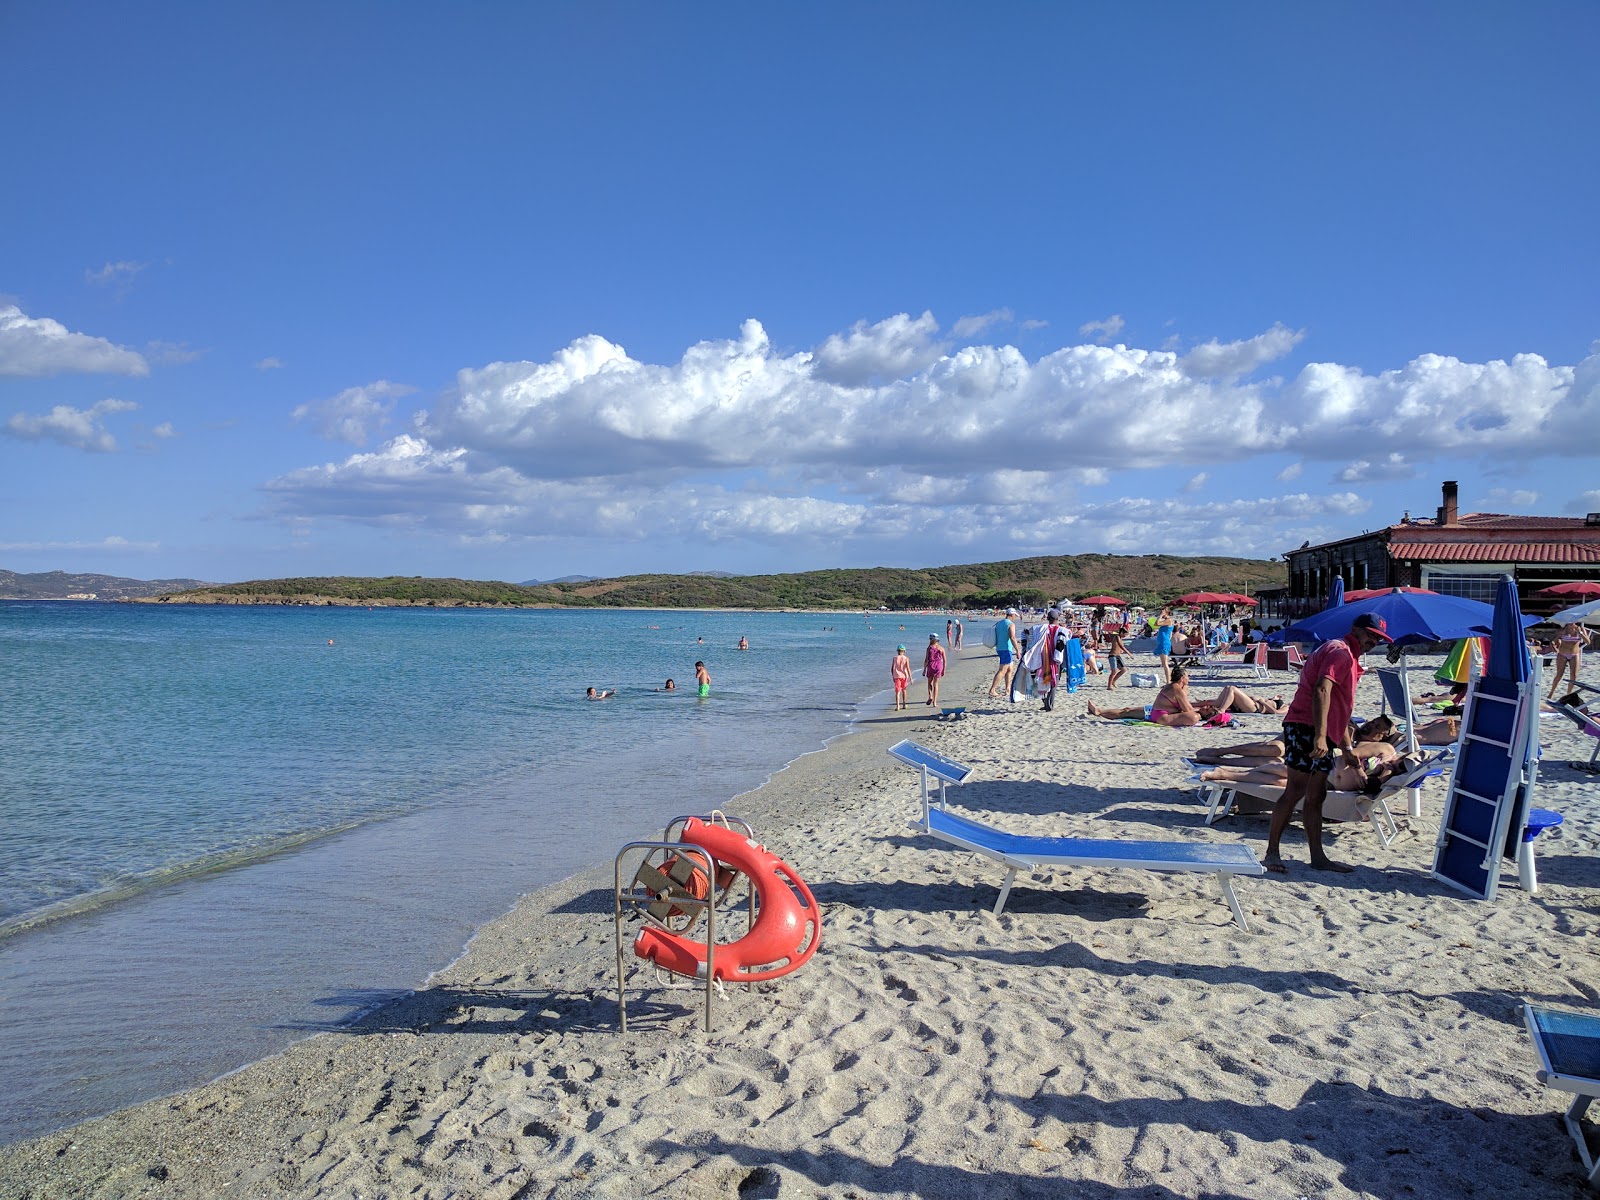 Pittulongu Plajı'in fotoğrafı parlak kum yüzey ile